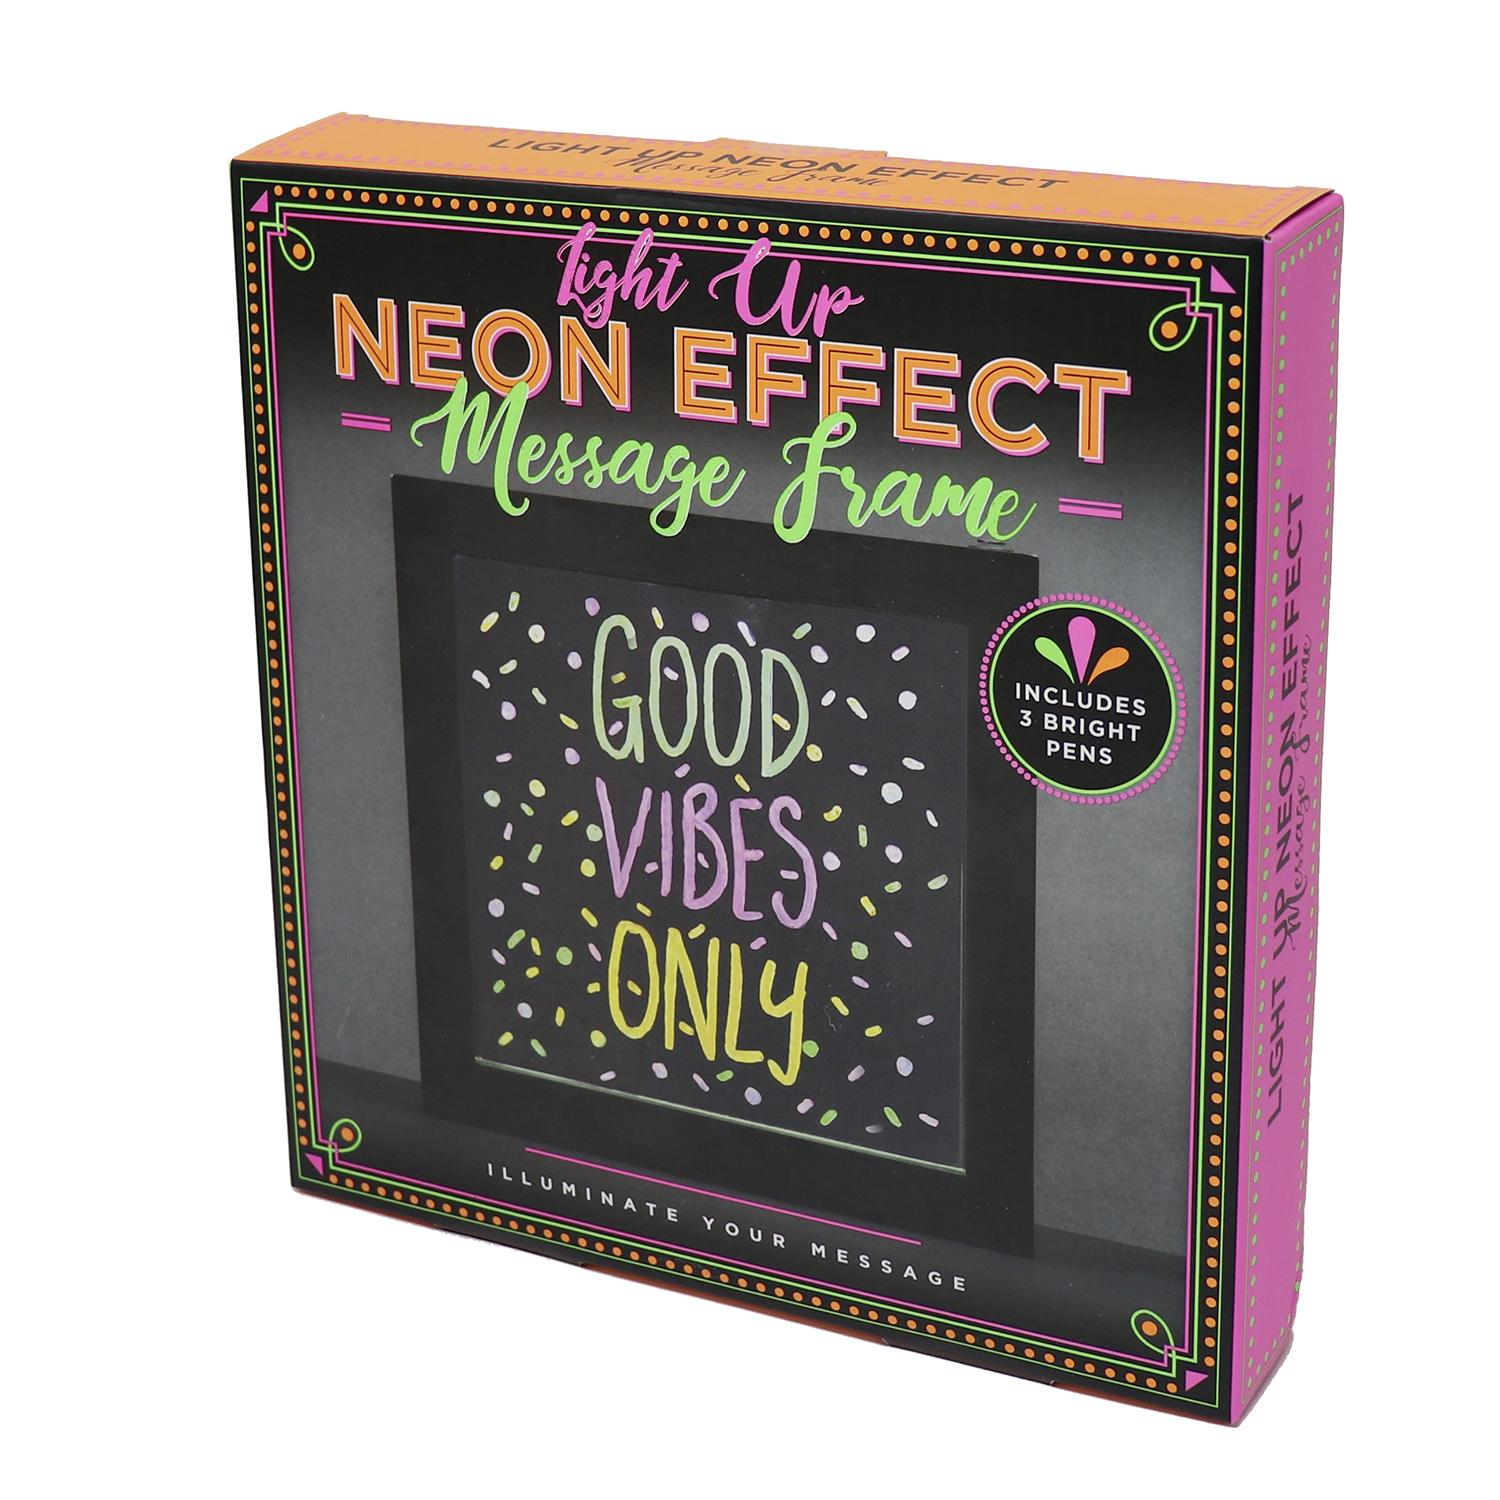 FIZZ CREATIONS Neon Effect Light Merchandise Frame Message Up